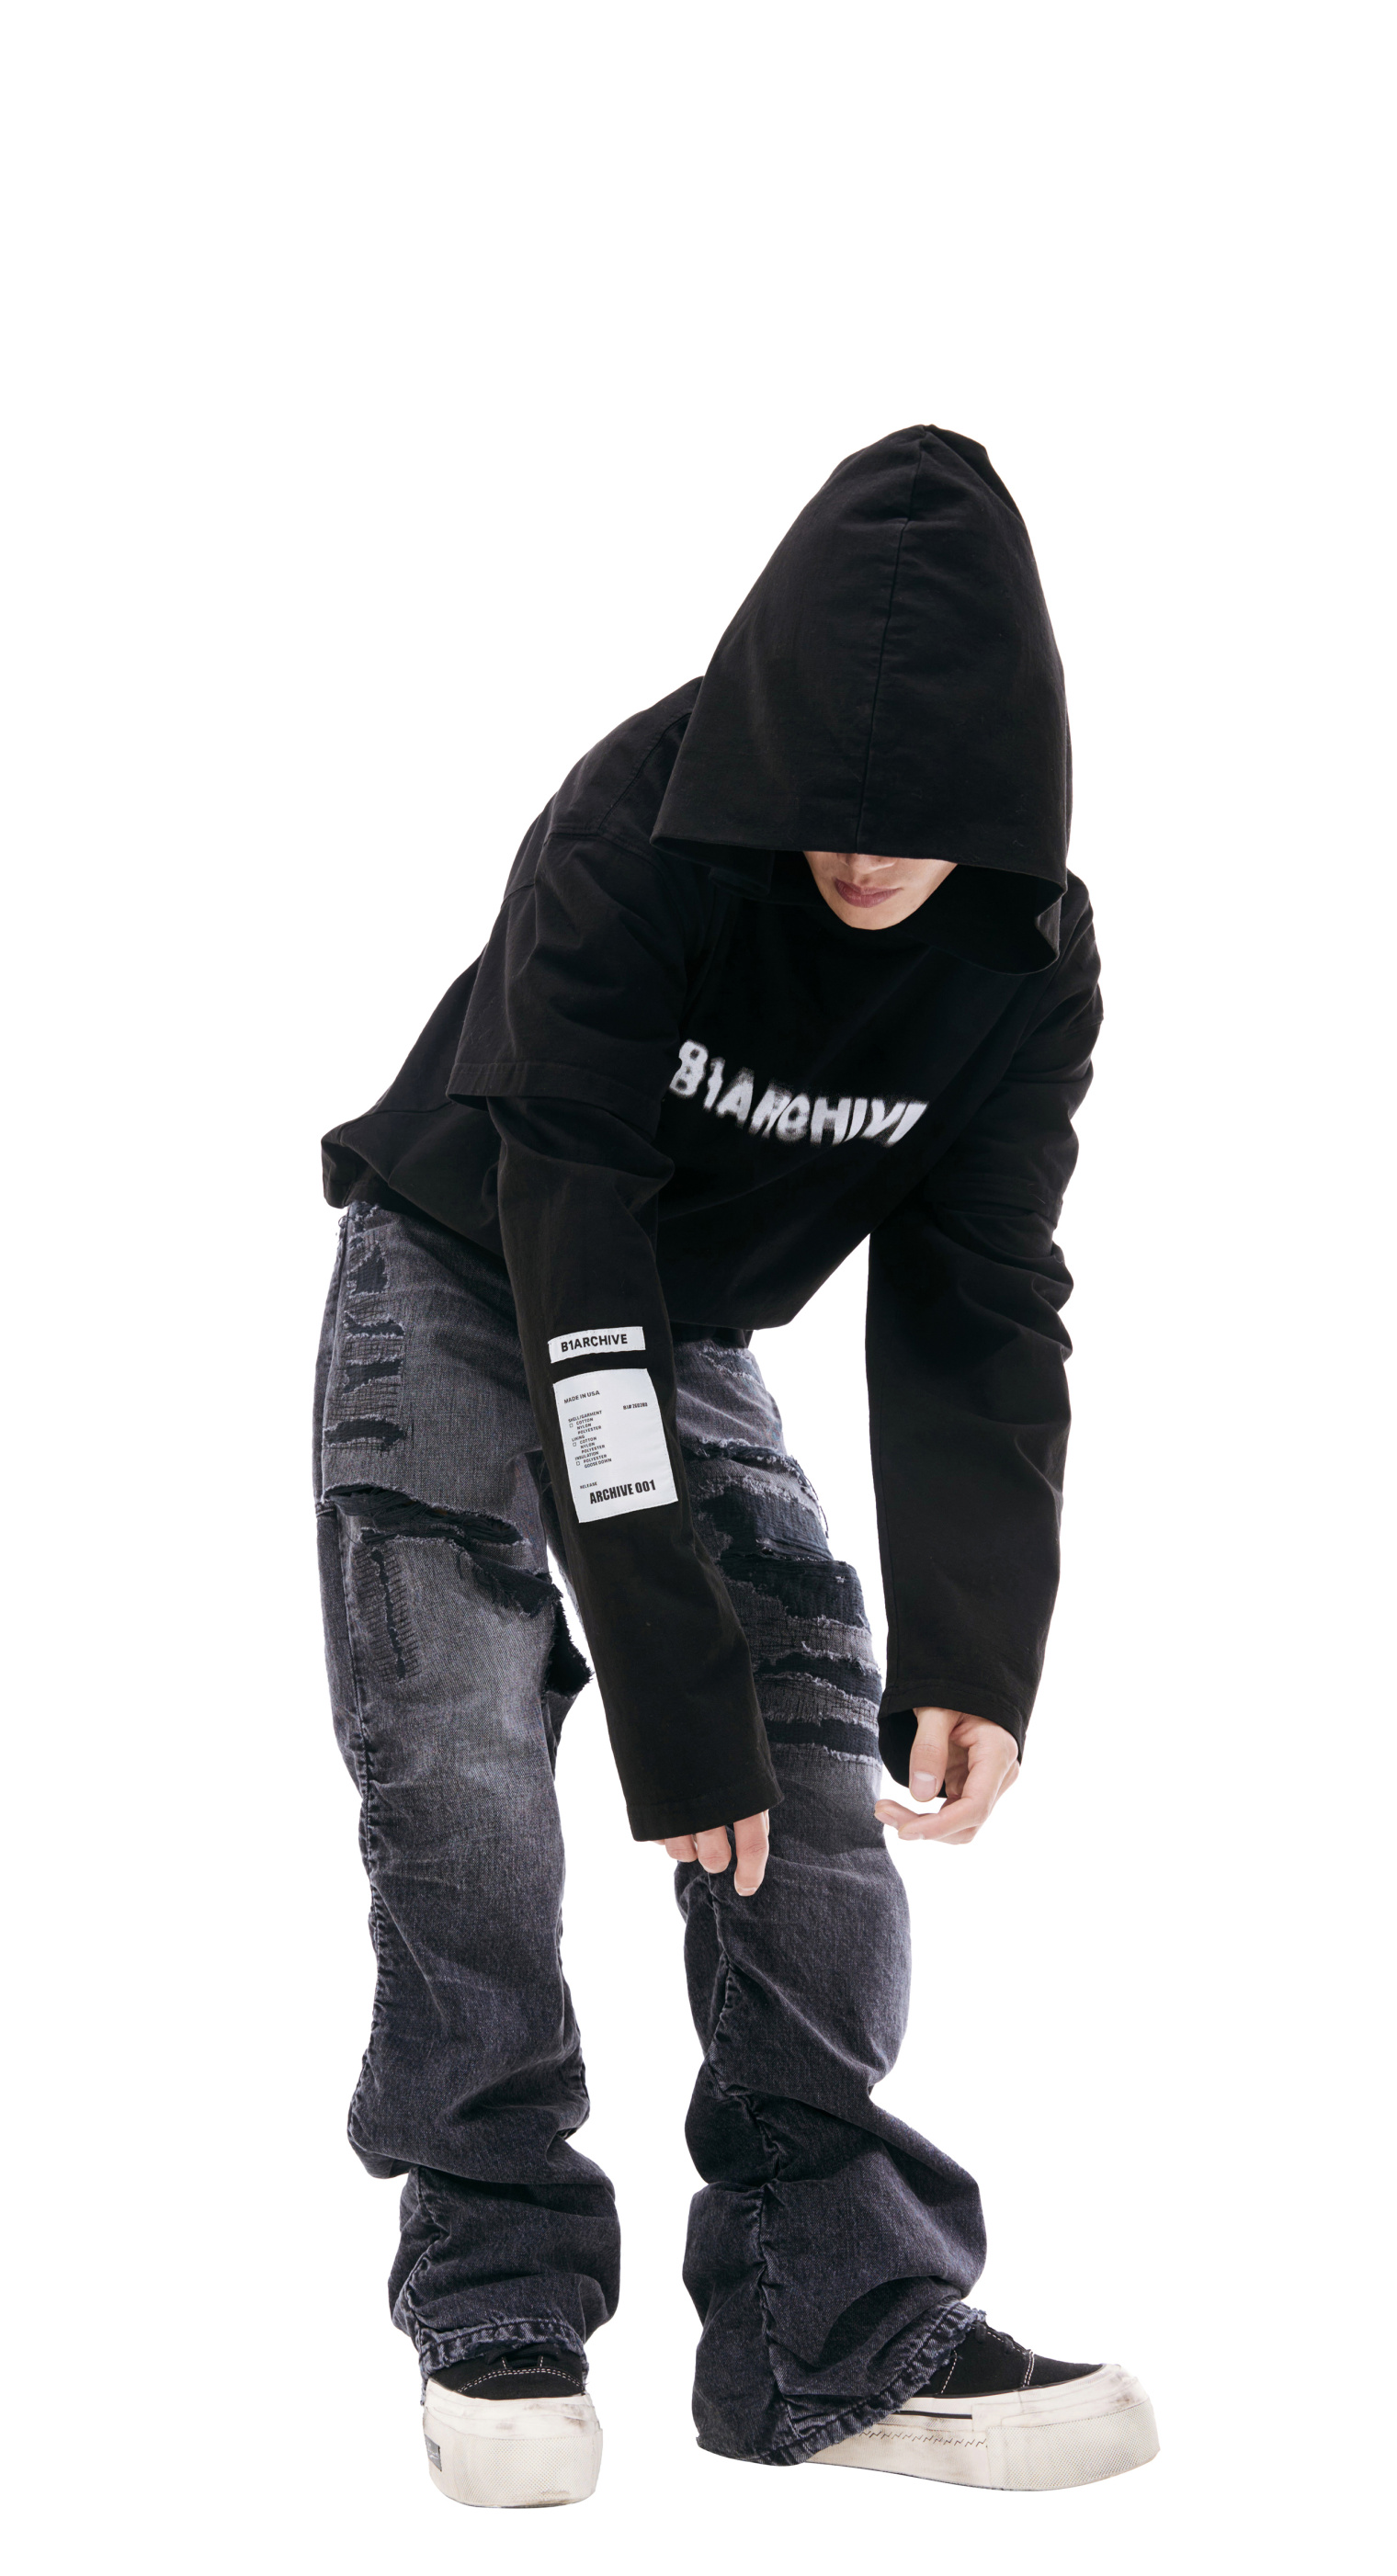 B1ARCHIVE Black printed hoodie